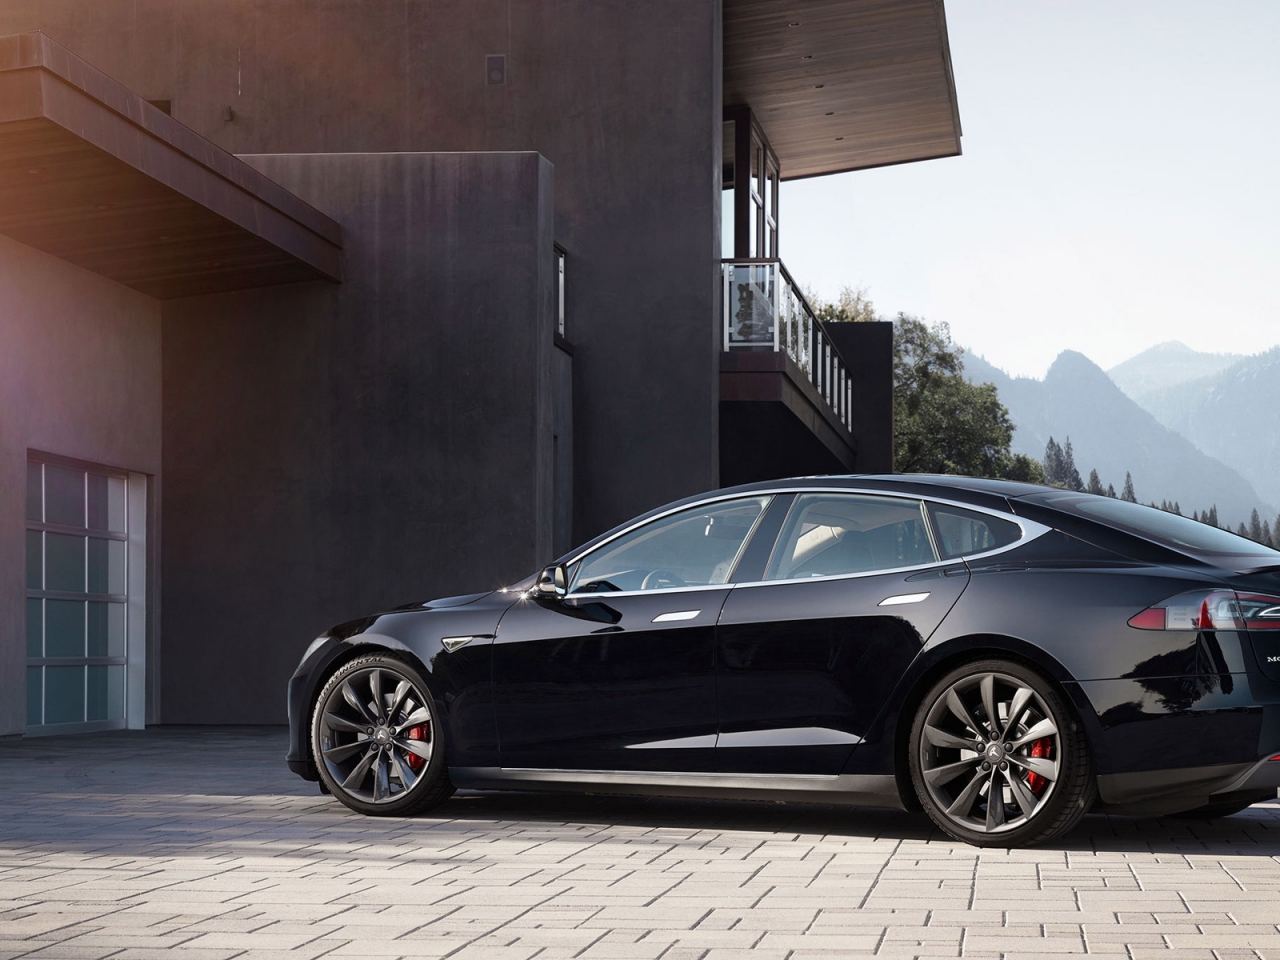 Black Tesla Model S 2015 for 1280 x 960 resolution